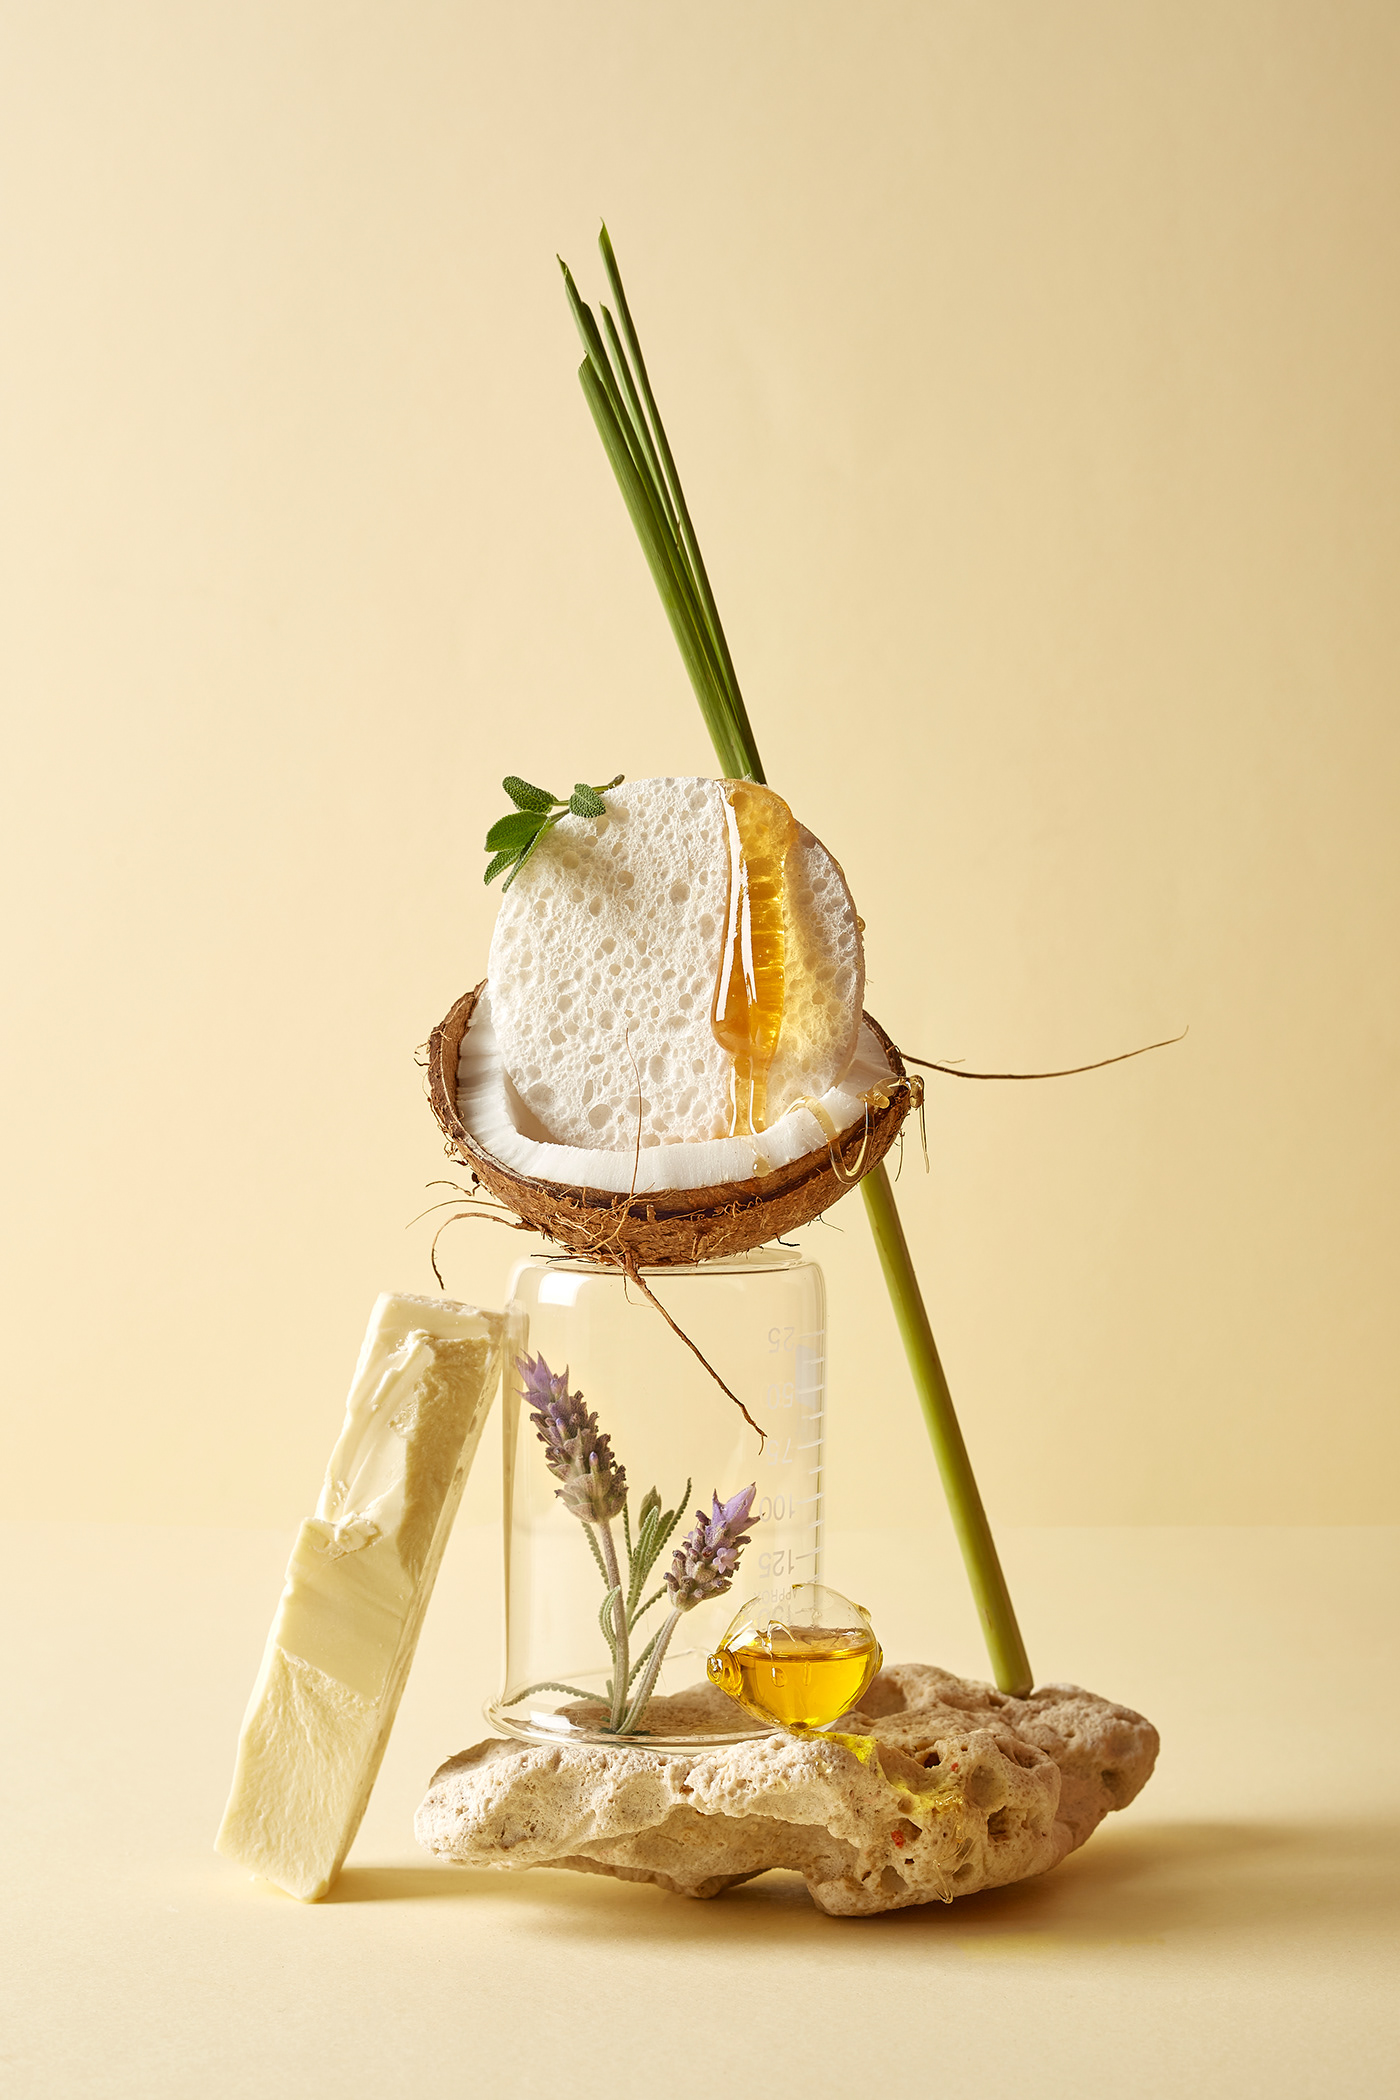 Coconut still life honey sculpture stone oil composition conceptual lemongrass lavender